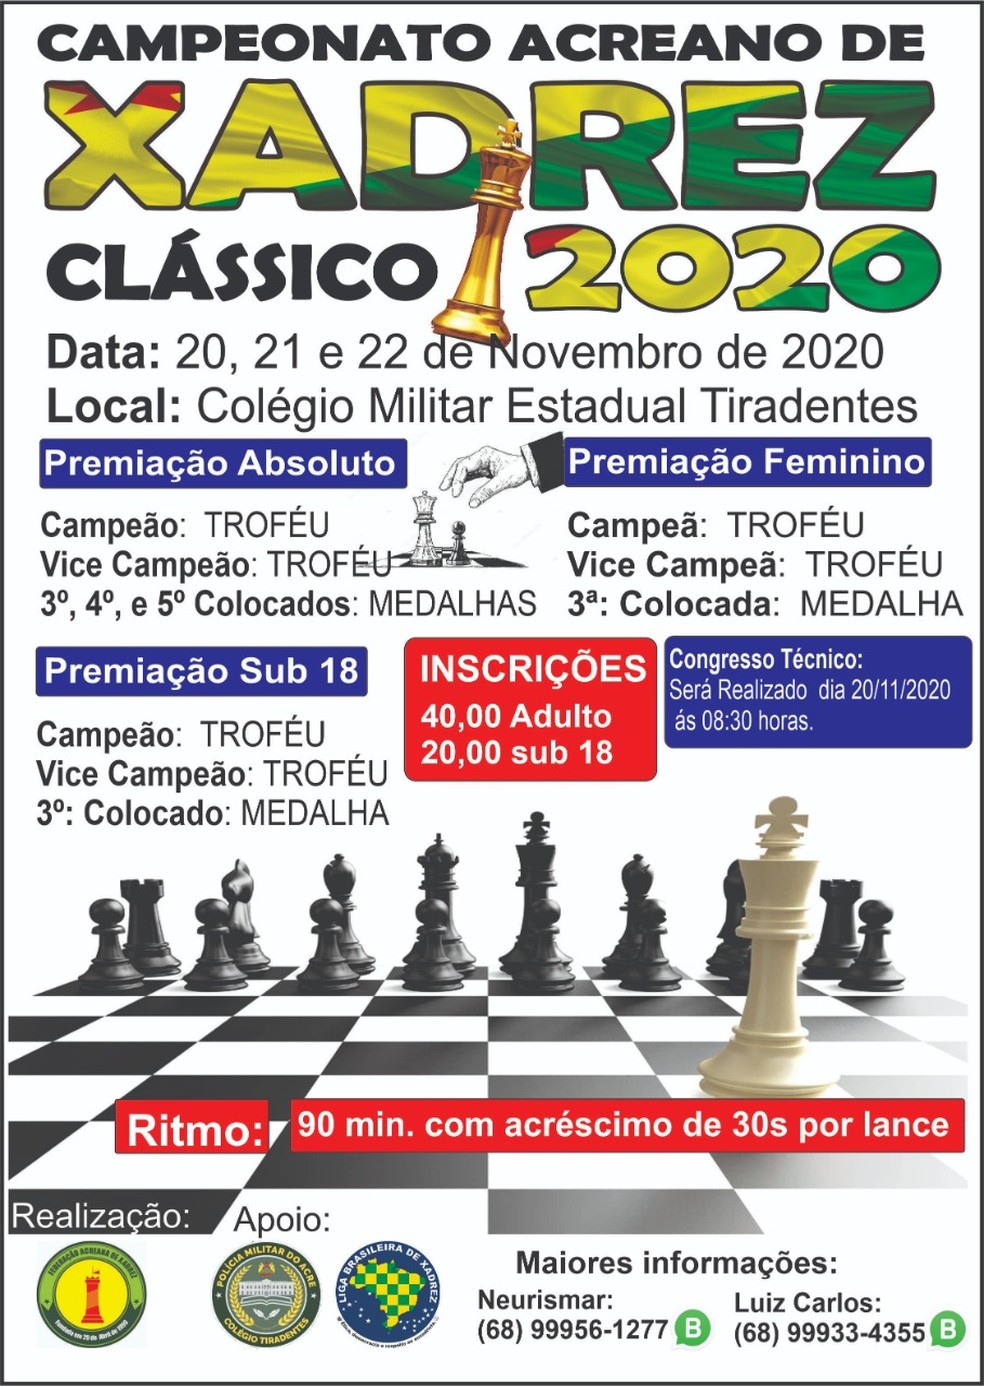 Federação de Xadrez do Paraná